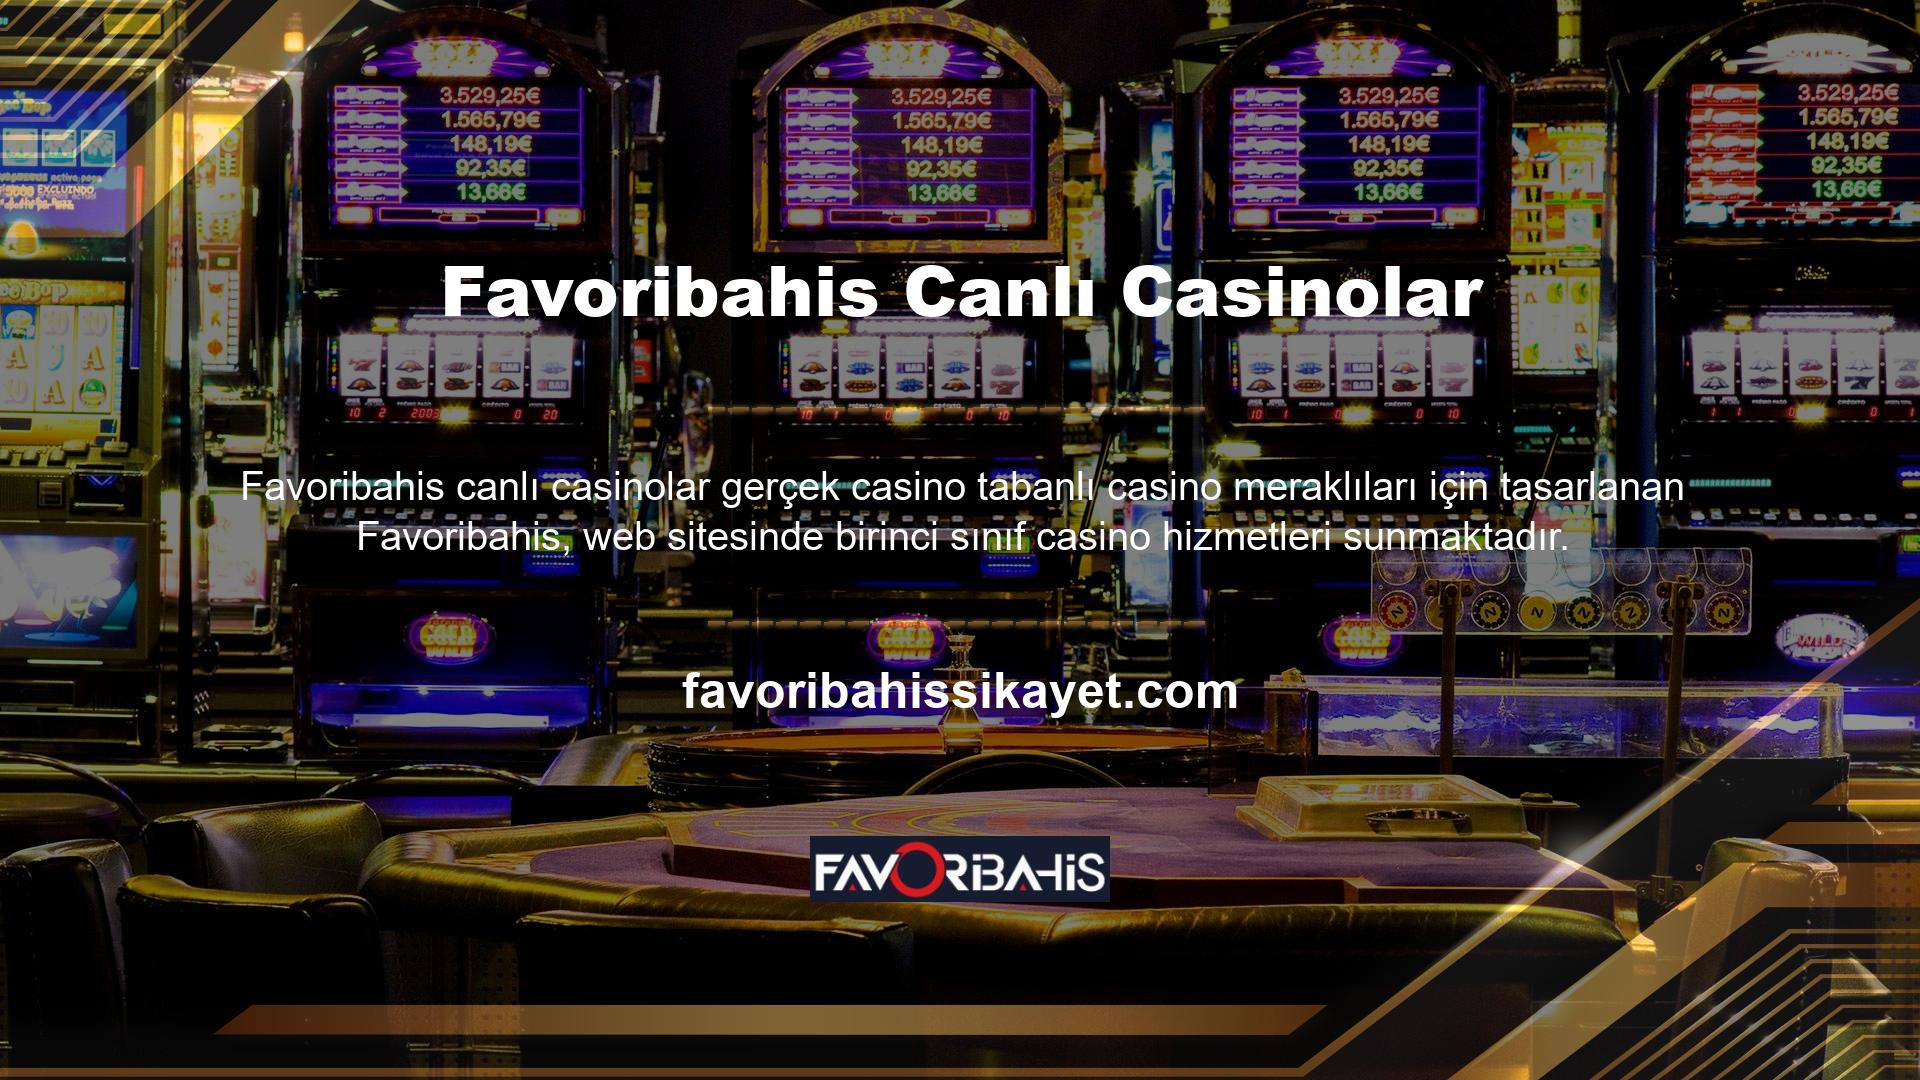 Gerçek bir casinodan daha fazla slot makinesine sahip olan Favoribahis, üyelerine olağanüstü bir slot makinesi hizmeti sunmak için dünyanın en büyük casino sağlayıcılarıyla ortaklık kurmuştur